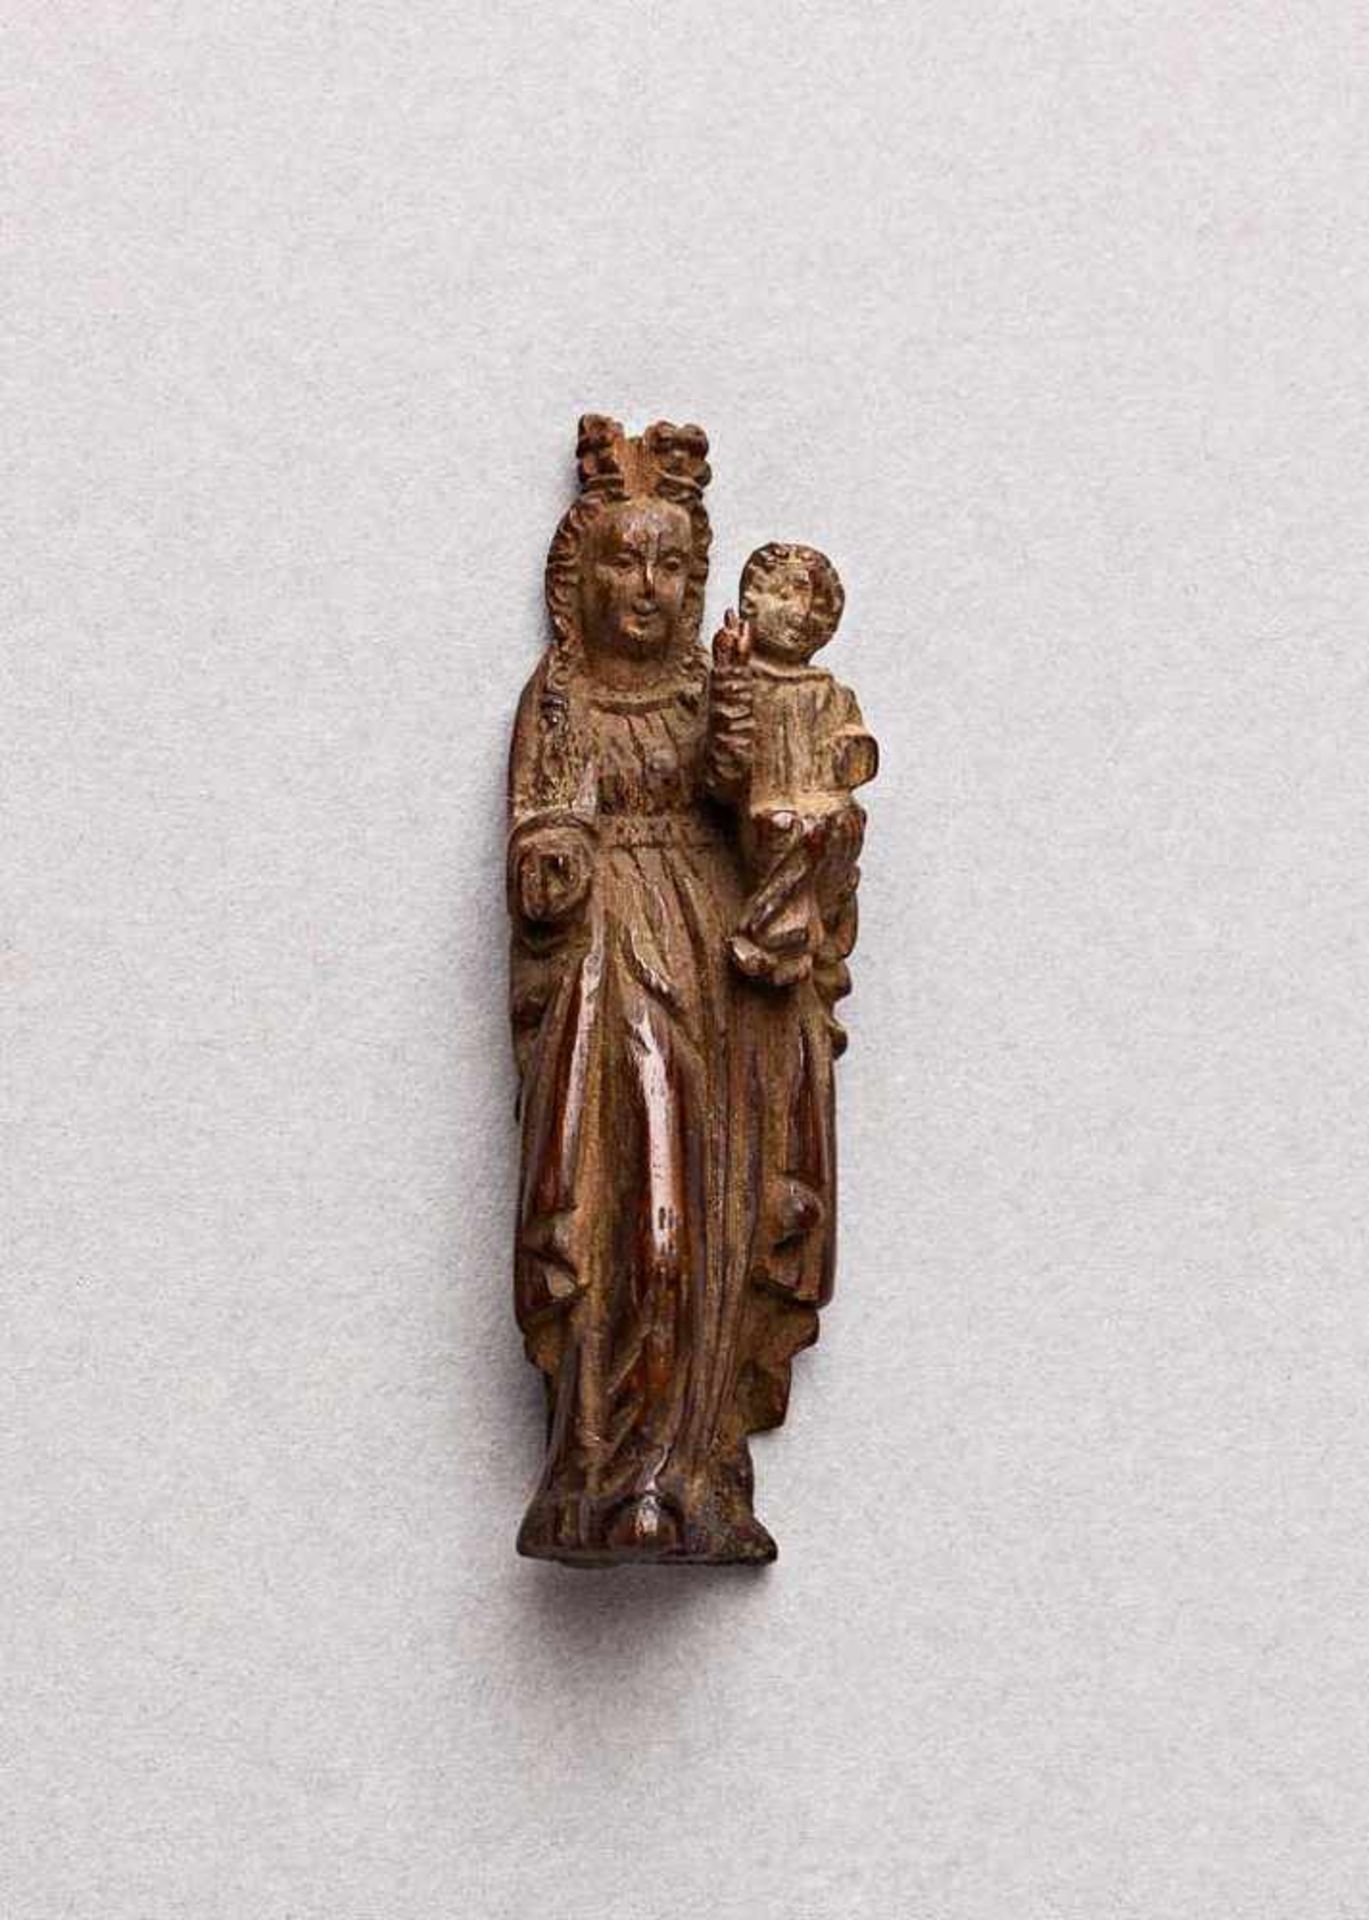 Miniatur-Buchsbaumschnitzerei. Madonna mit Kind. Süddeutsch, um 1630. H 4,6 cm. Sammlung Werner-